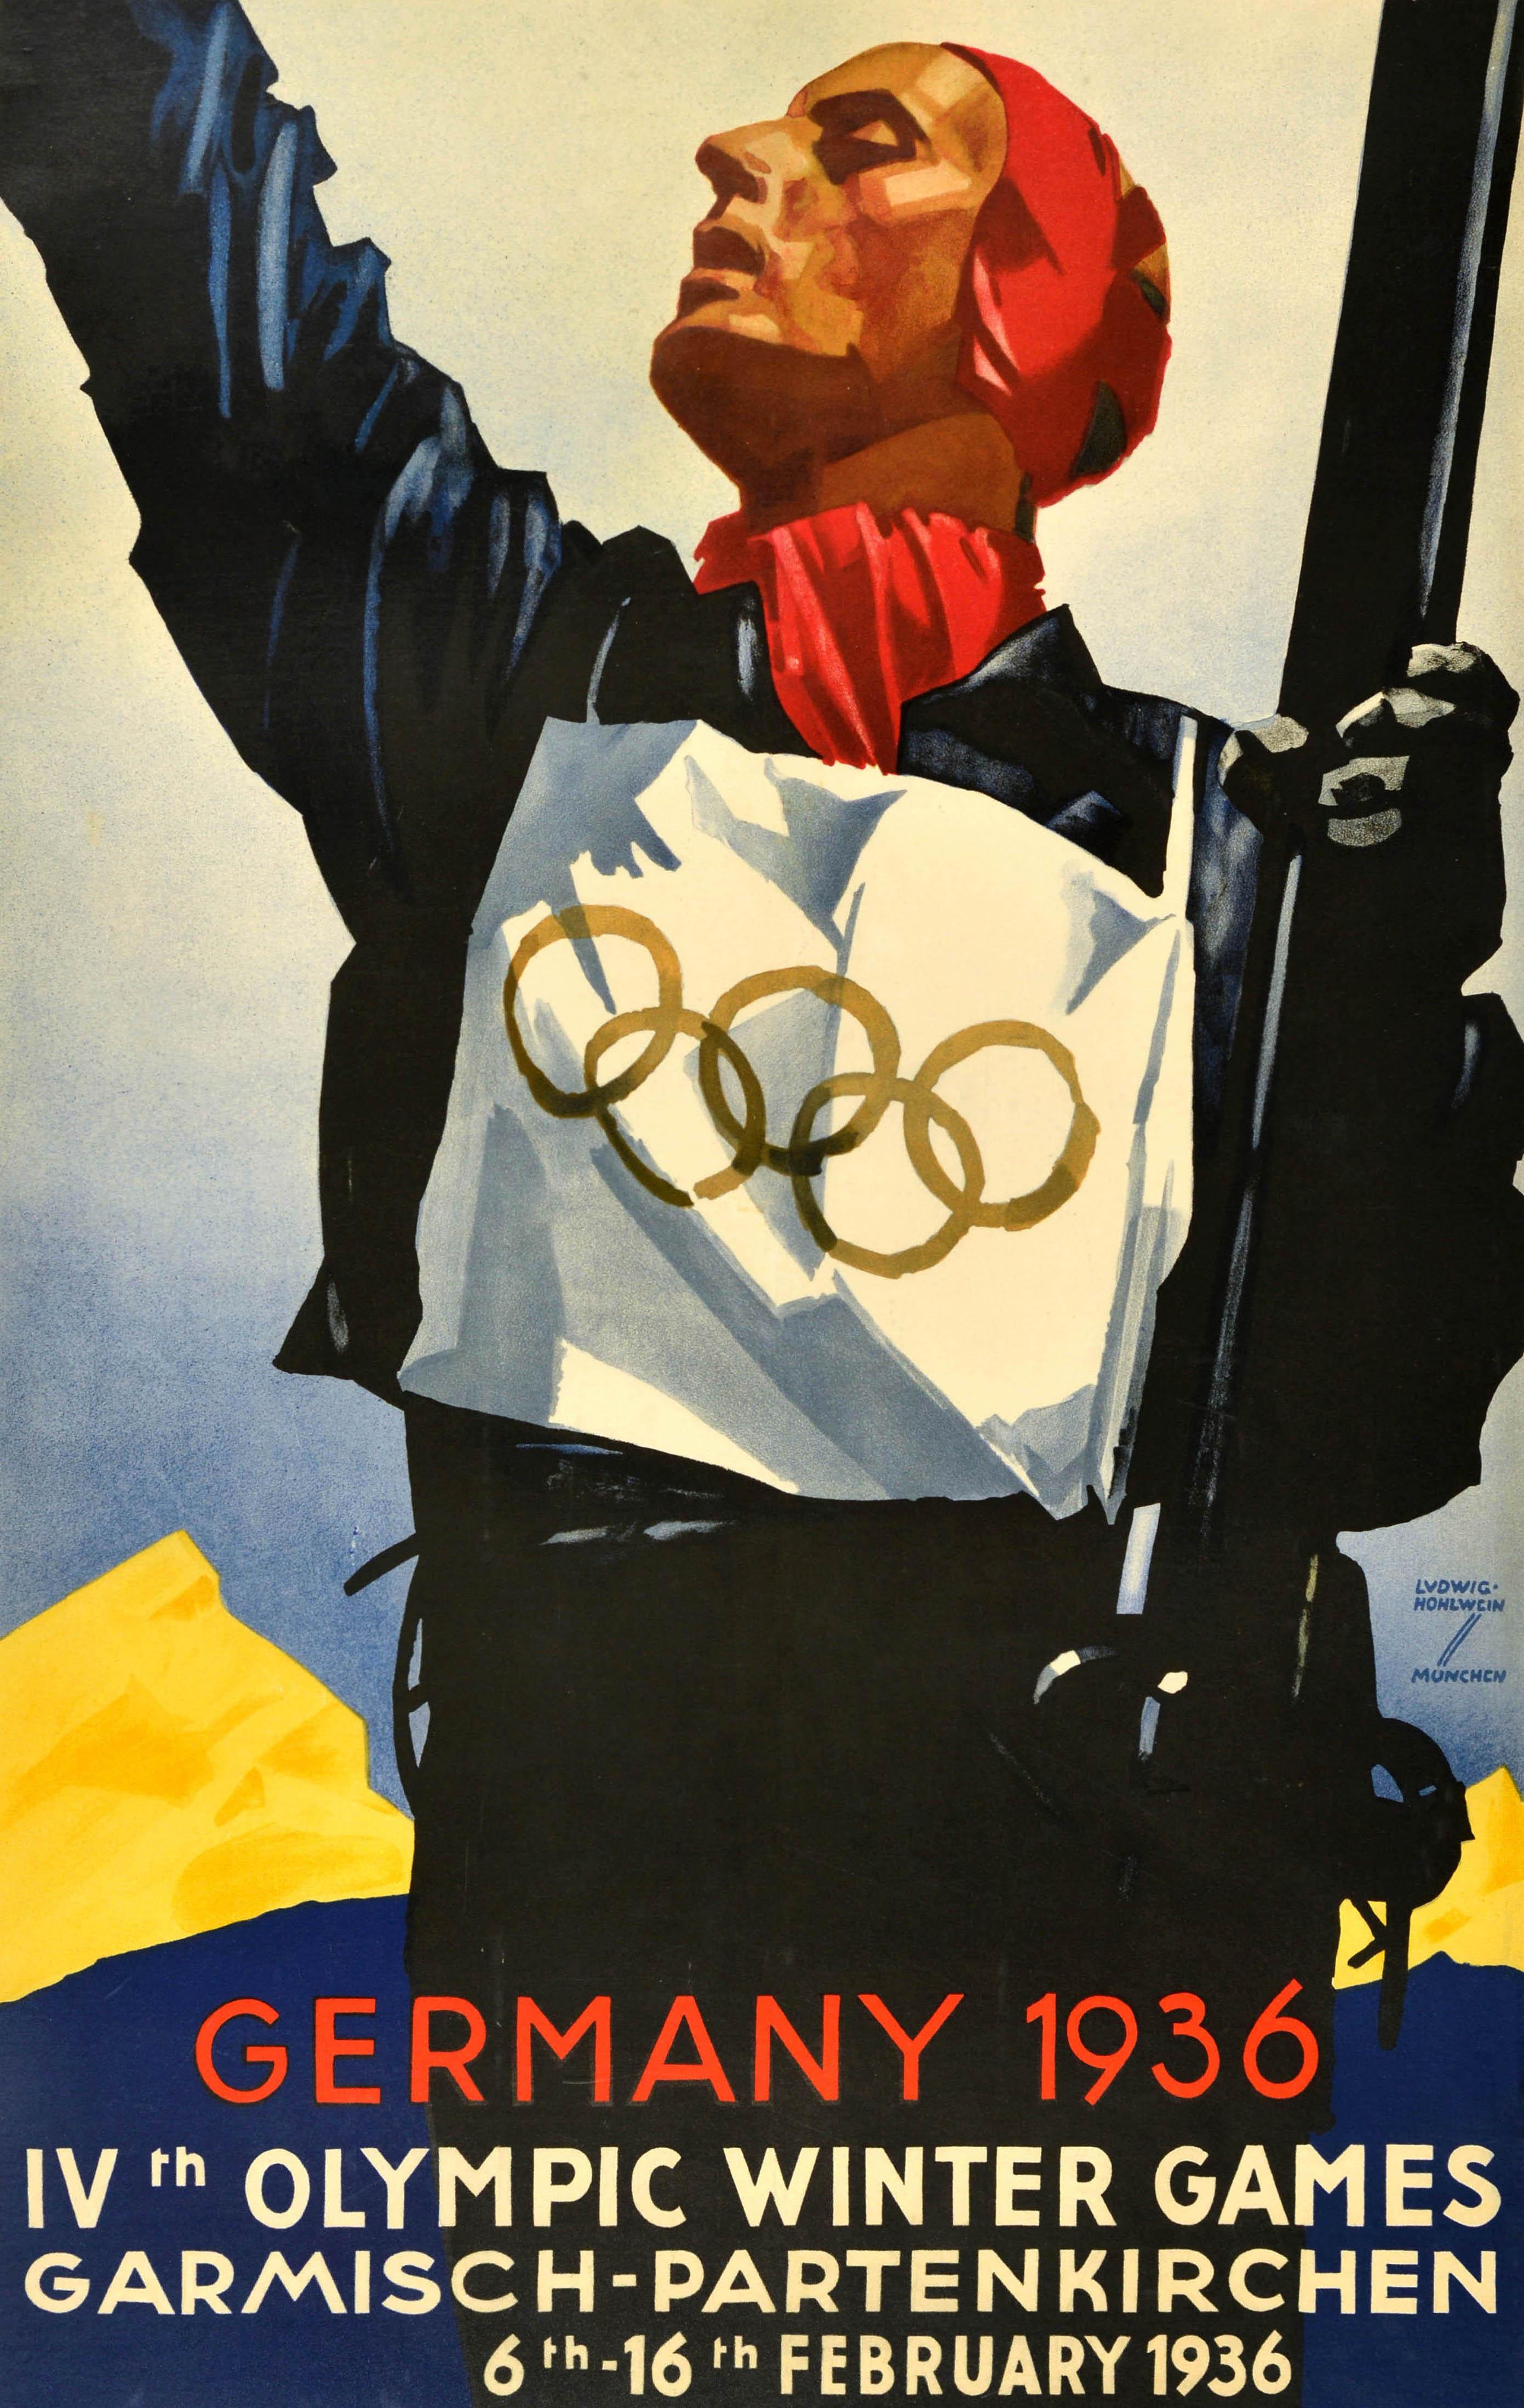 Affiche sportive vintage originale - Allemagne 1936 IVe Jeux olympiques d'hiver Garmisch Partenkirchen 6-16 février - comportant une illustration dynamique de Ludwig Hohlwein (1874-1949) représentant un skieur portant un dossard avec le symbole des